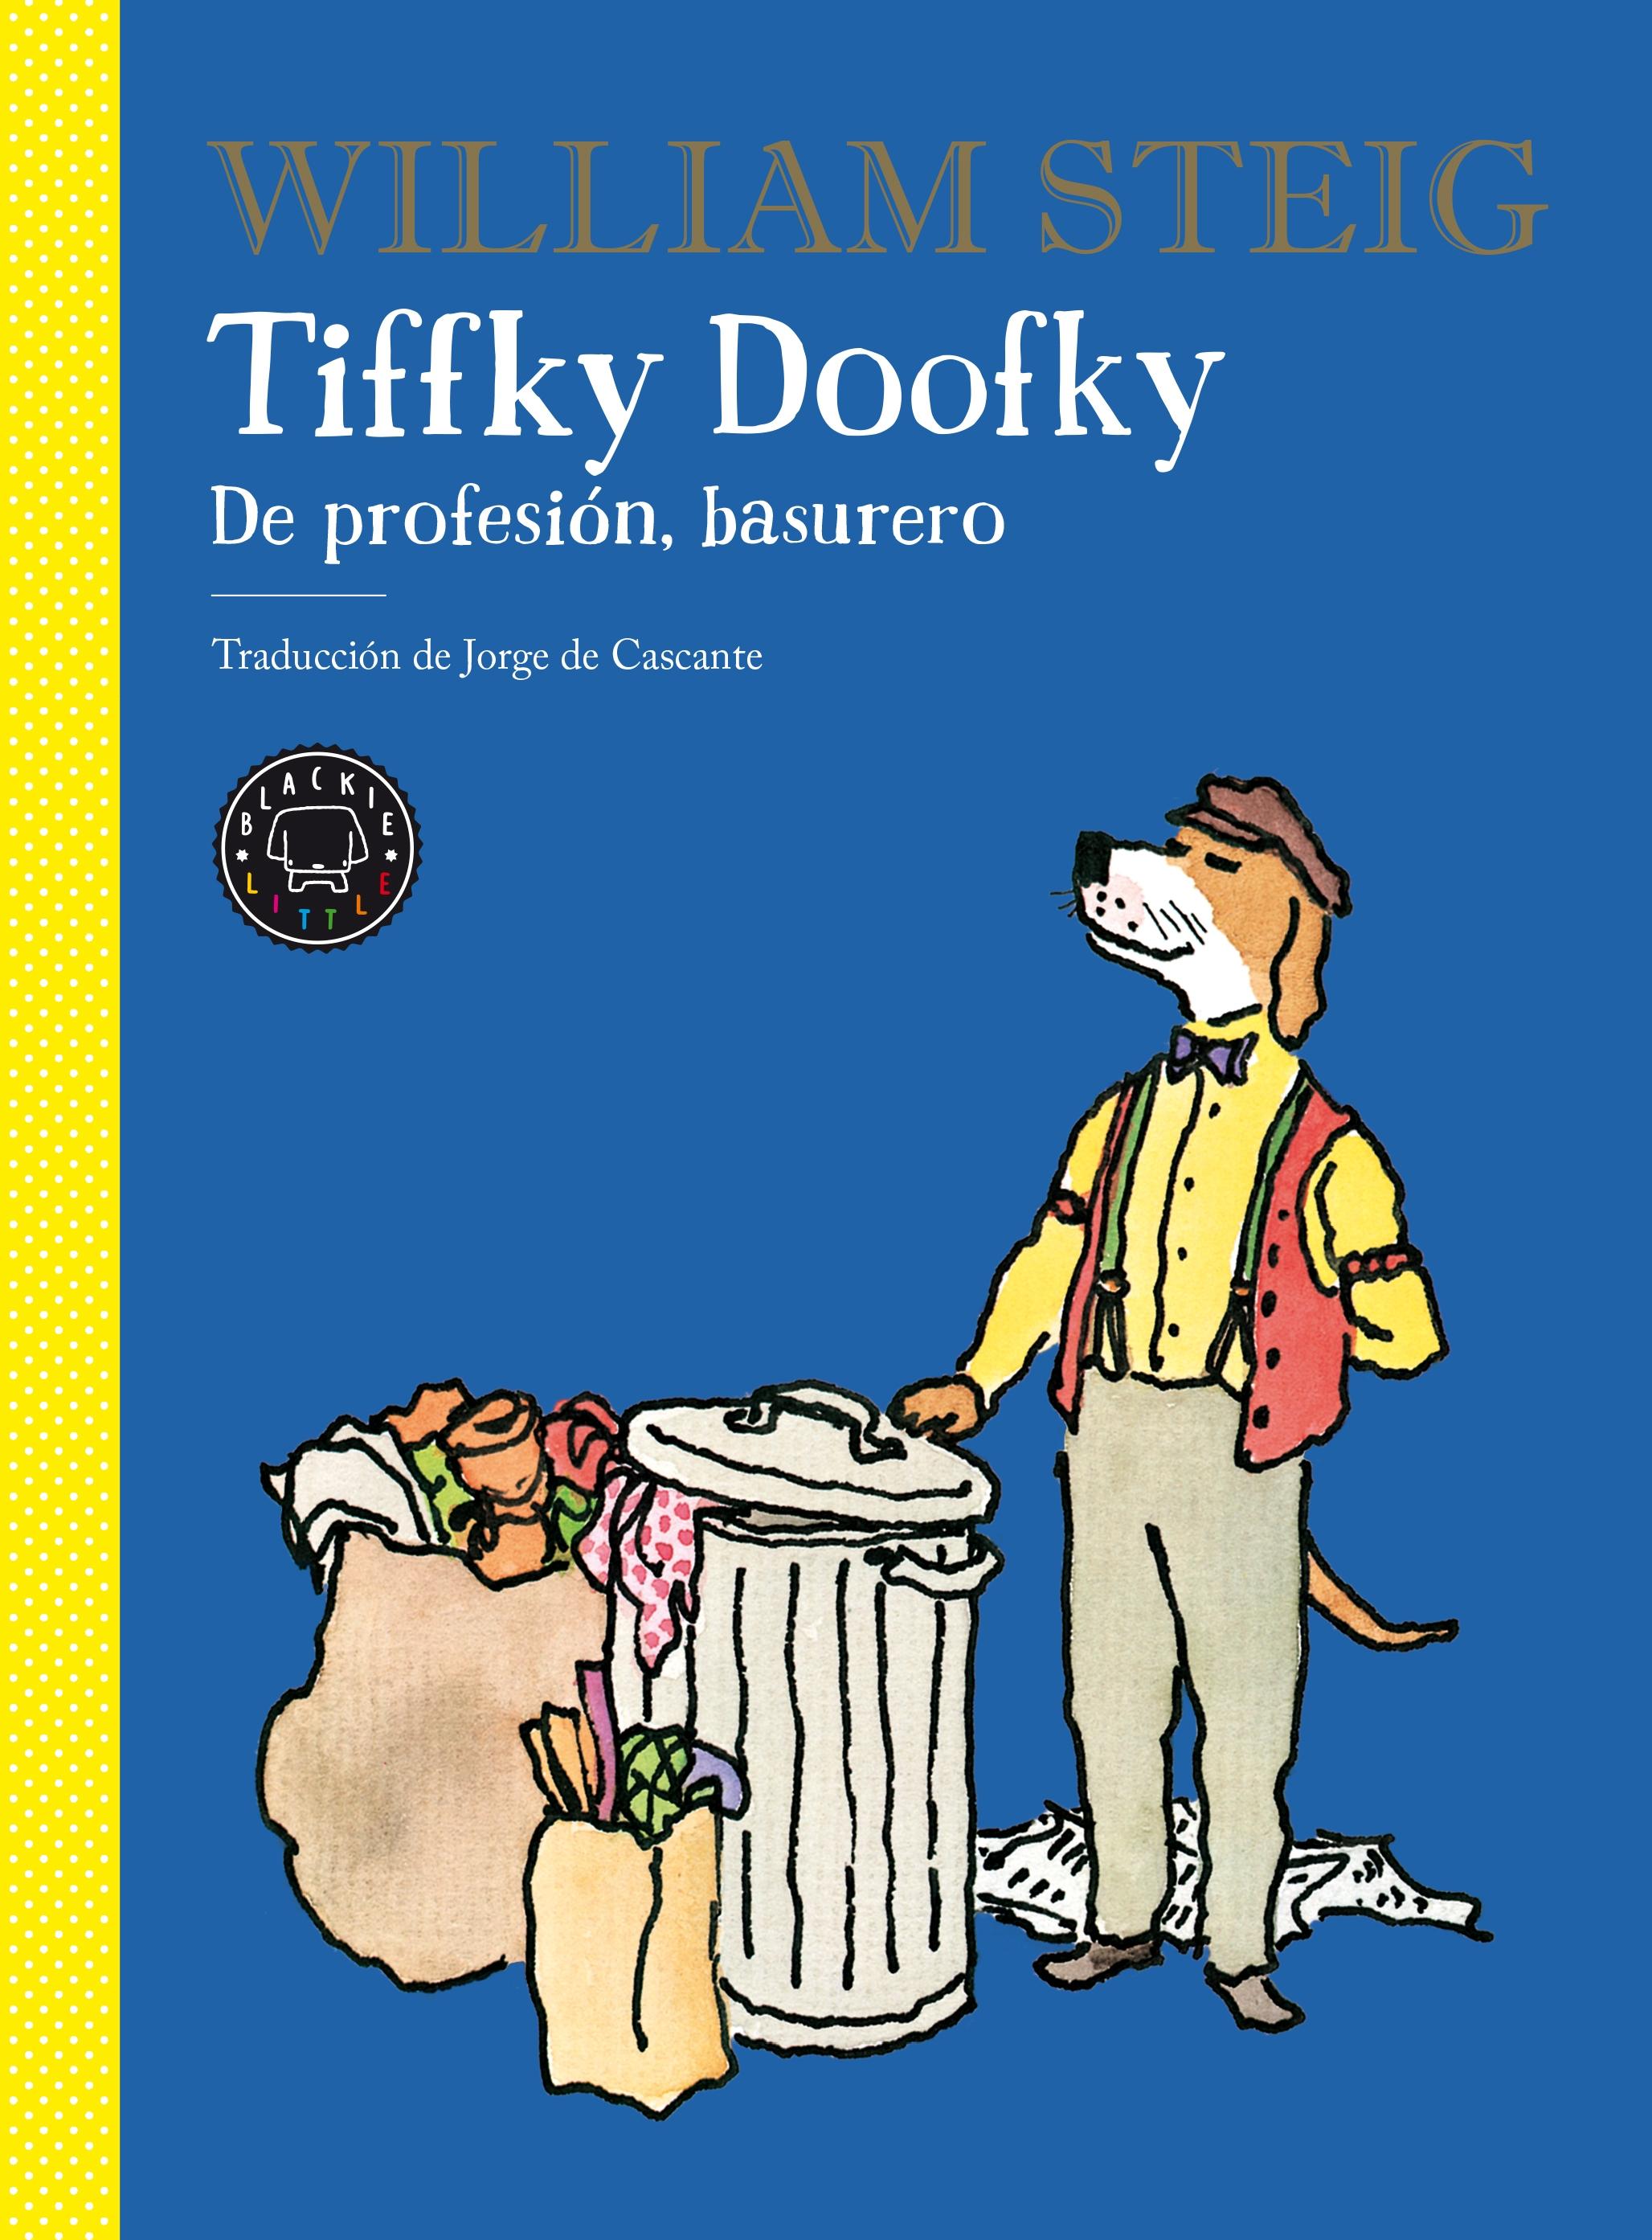 Tiffky Doofky "De profesión, basurero"